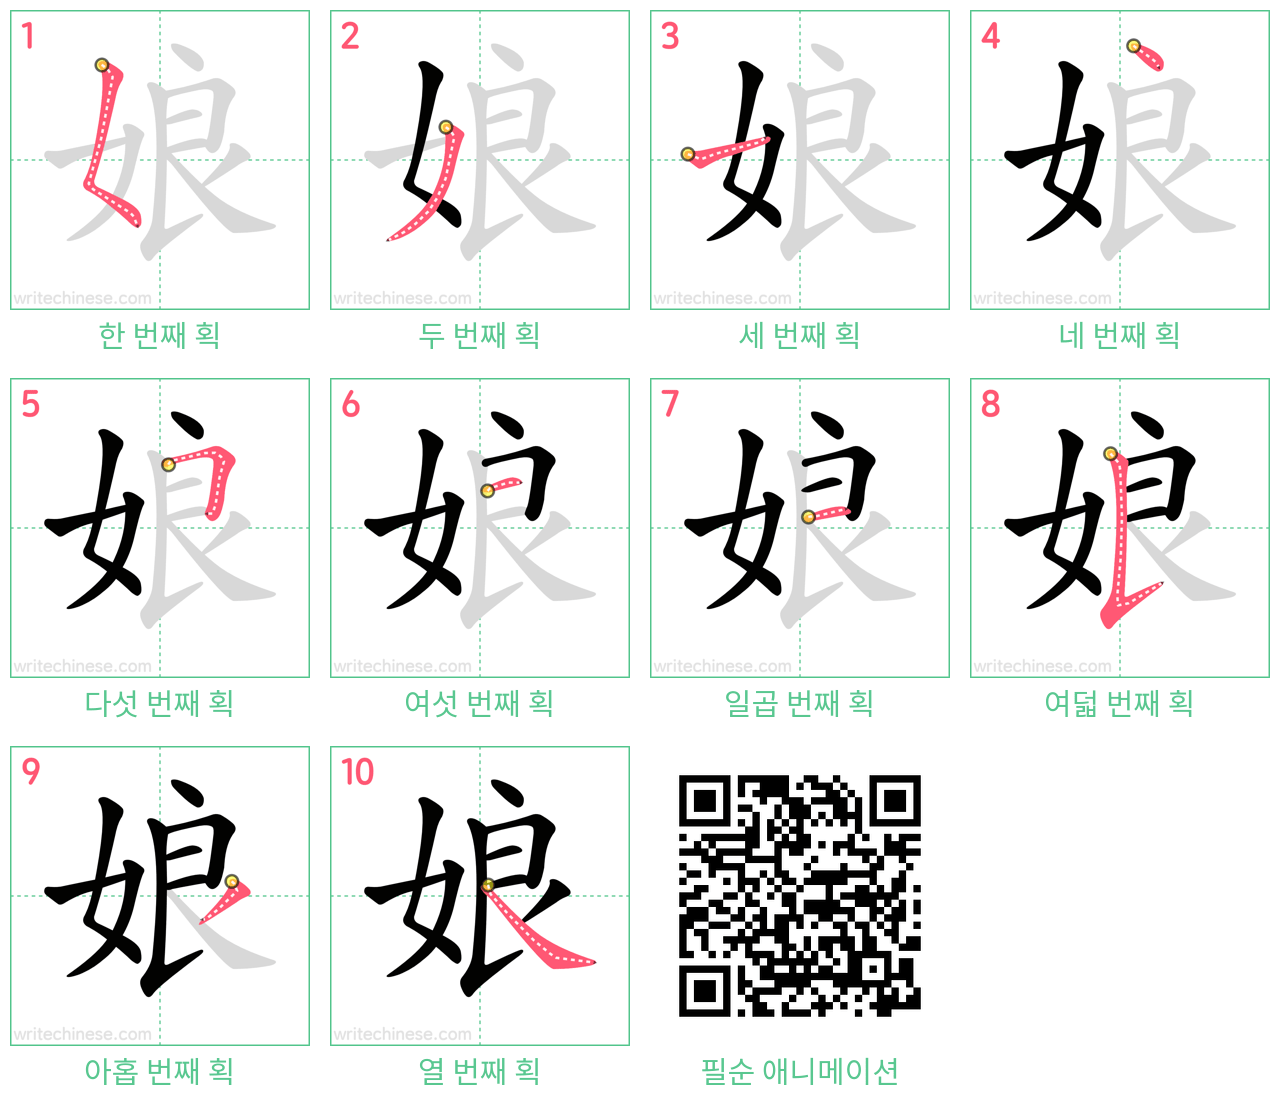 娘 step-by-step stroke order diagrams